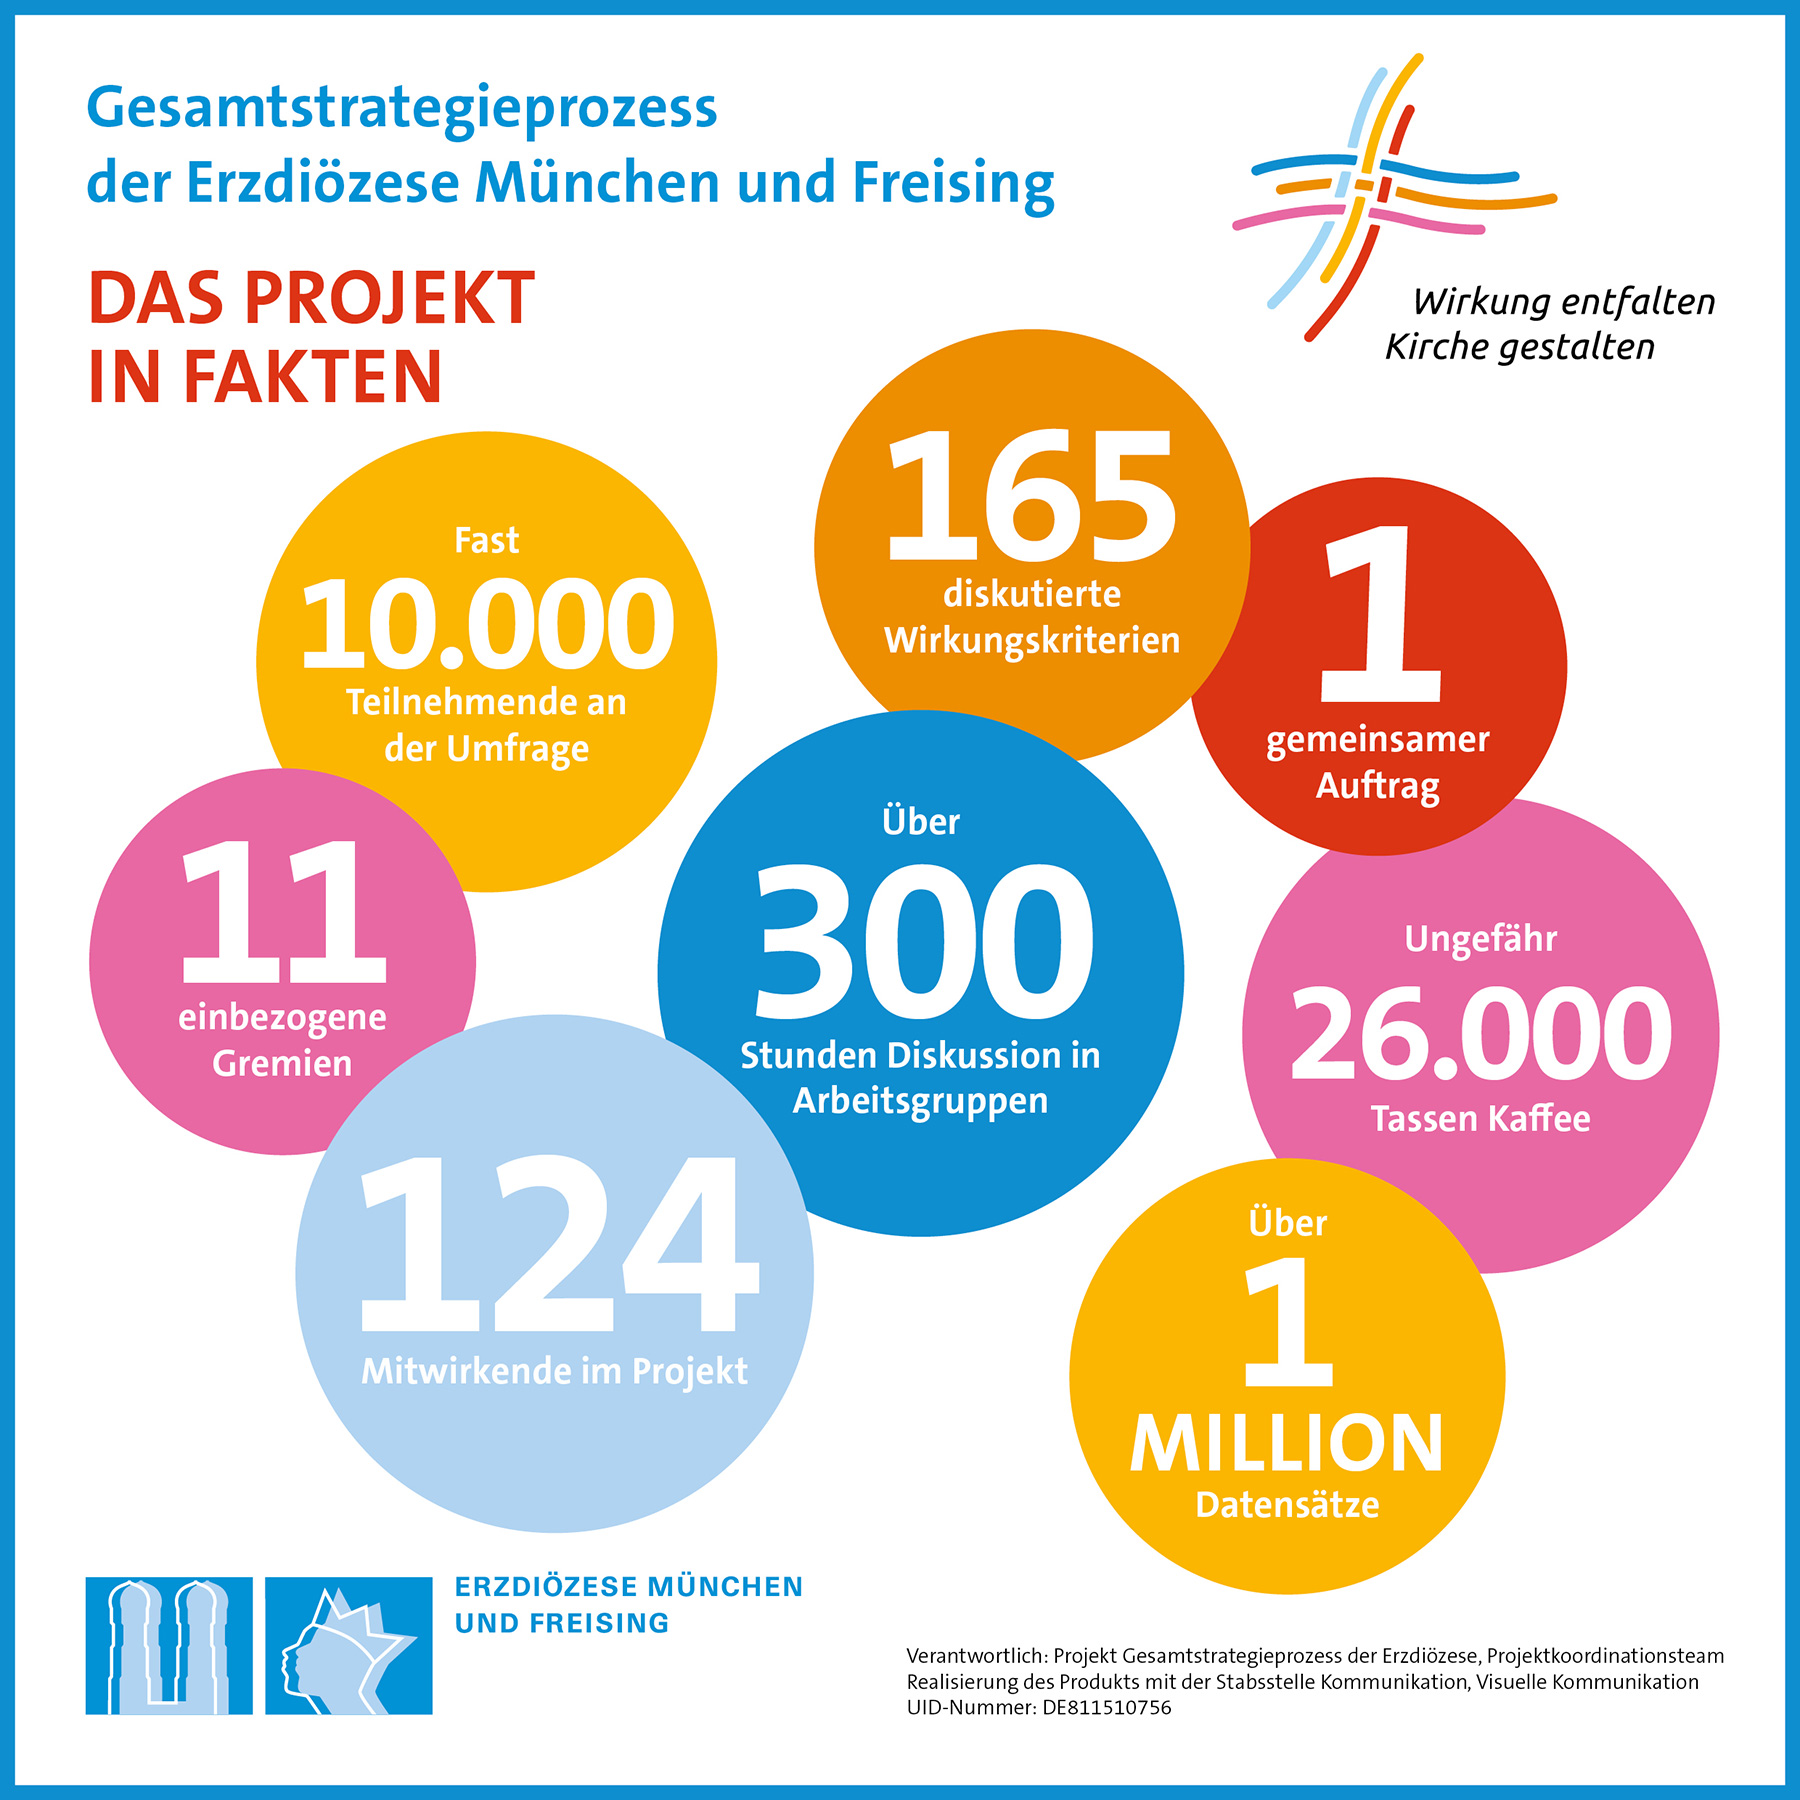 Zahlen, Daten, Fakten zum Gesamtstrategieprozess der Erzdiözese München und Freising